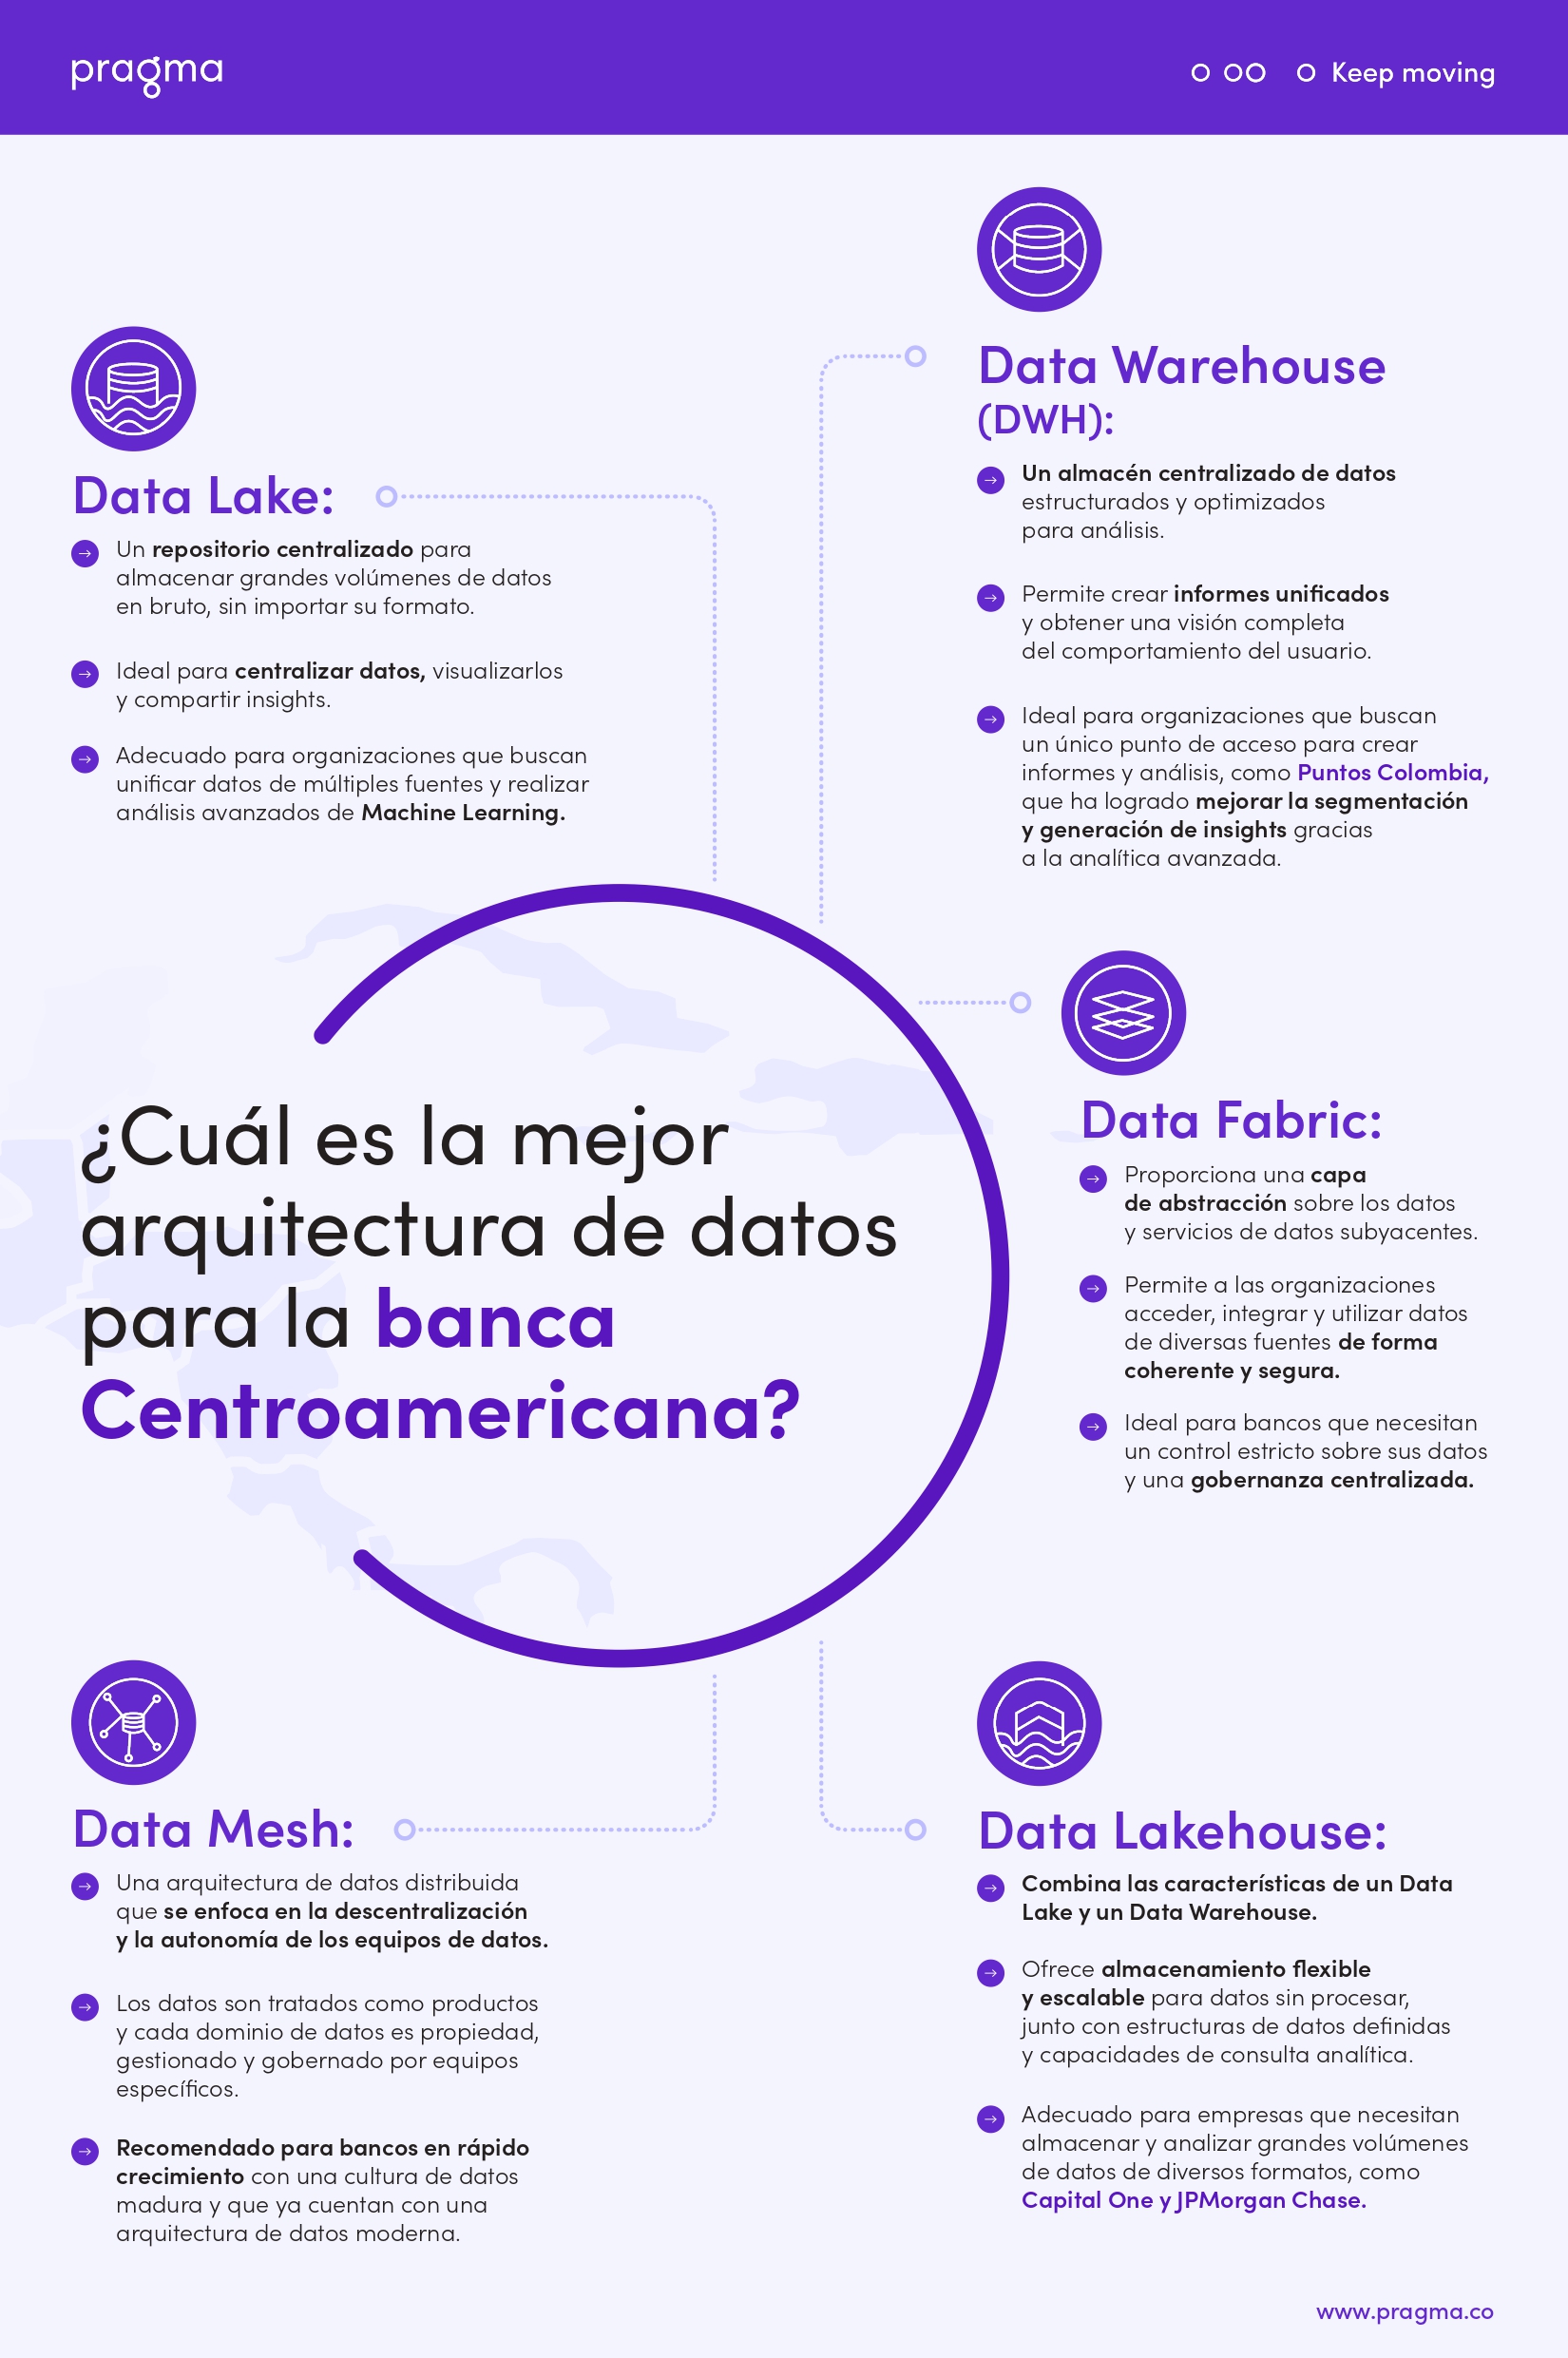 Estas son las arquitecturas de datos más utilizadas por la instituciones financieras: Data Lake, Data Warehouse, Data Fabric, Data Mesh, Data Lakehouse